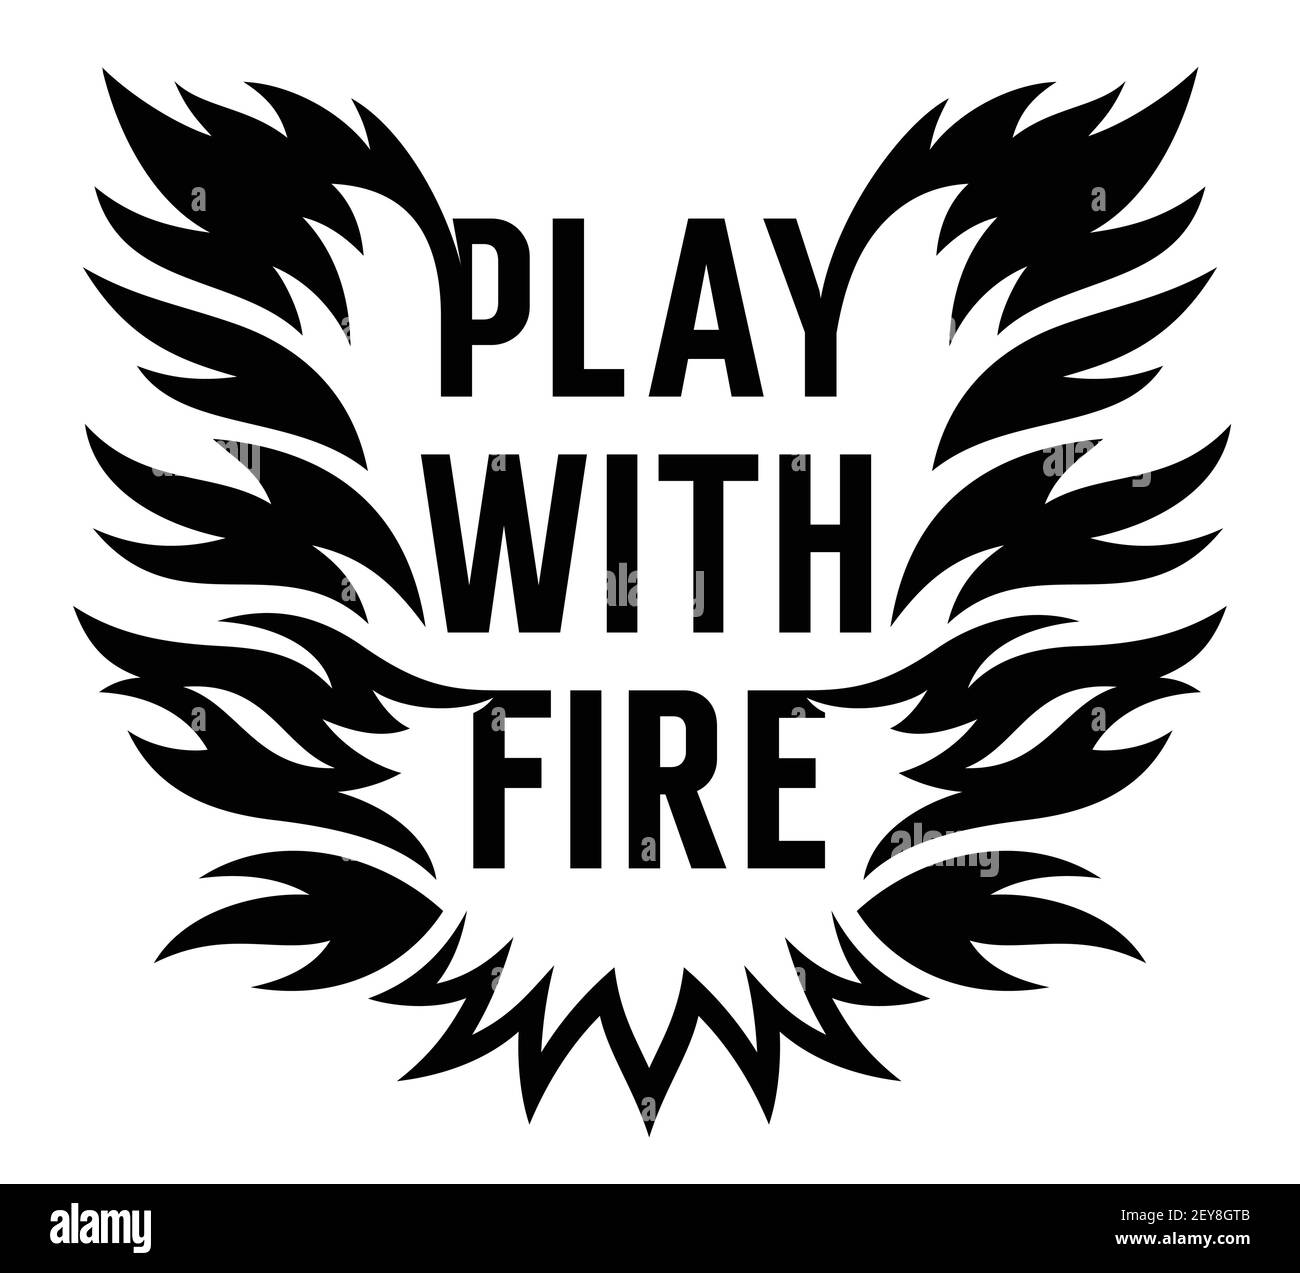 Texte Fire Flame et tendance pour un motif t-shirt Illustration de Vecteur